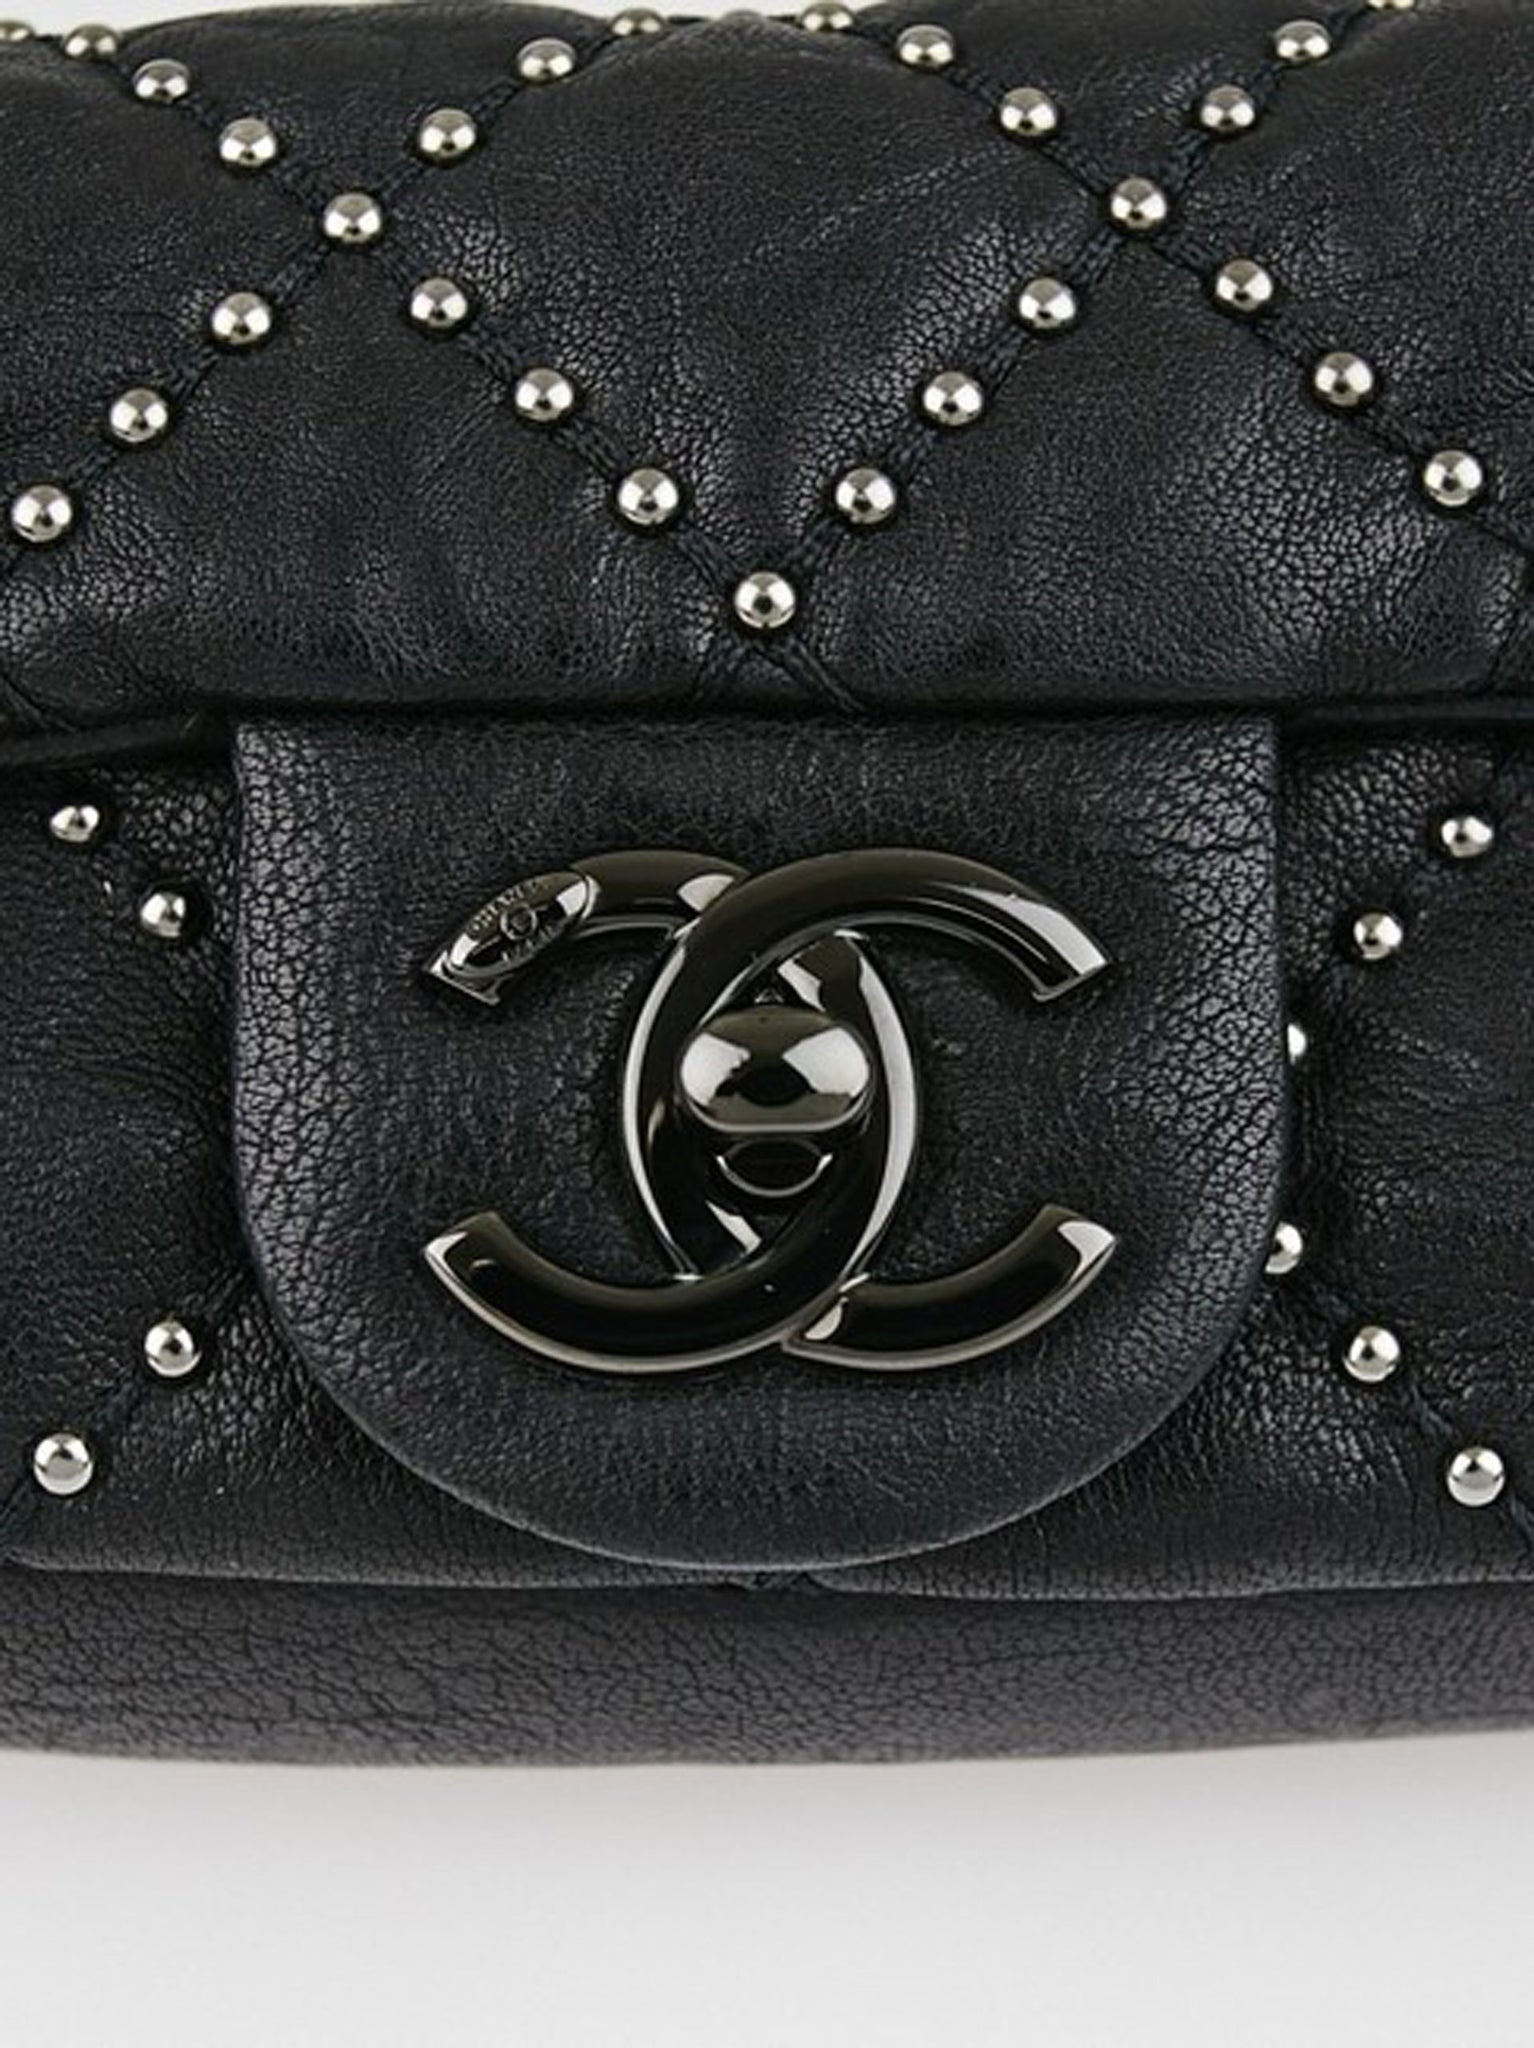 chanel black studded bag